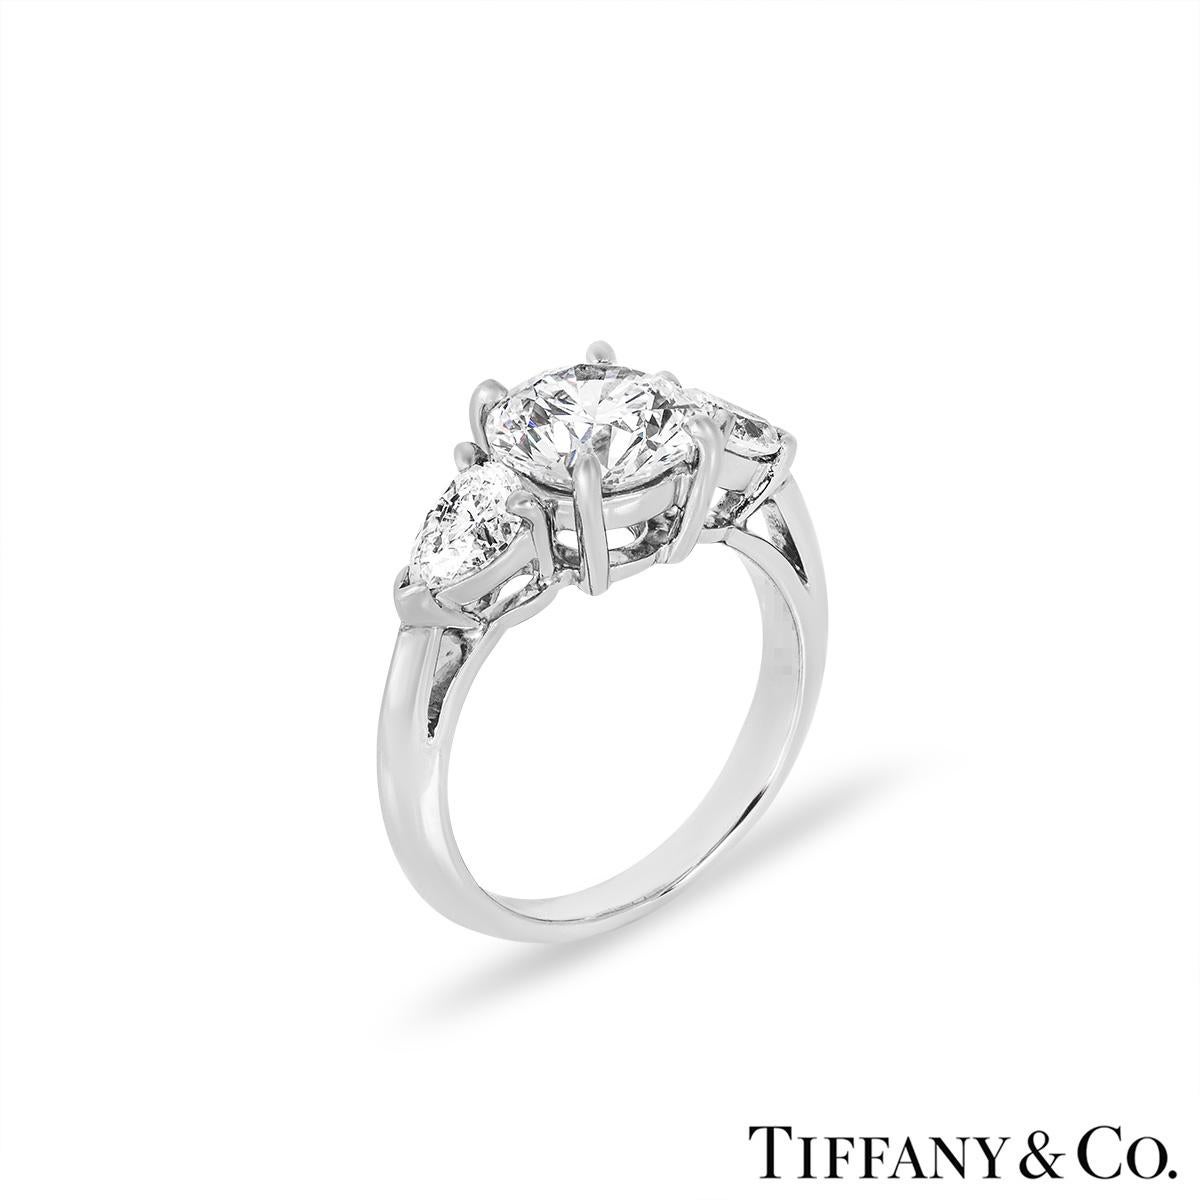 Une magnifique bague de fiançailles en diamant de Tiffany & Co. La bague à trois pierres est sertie au centre d'un diamant rond de taille brillant pesant 1,65ct, de couleur G et de pureté VVS2. Le diamant obtient une excellente note pour les trois